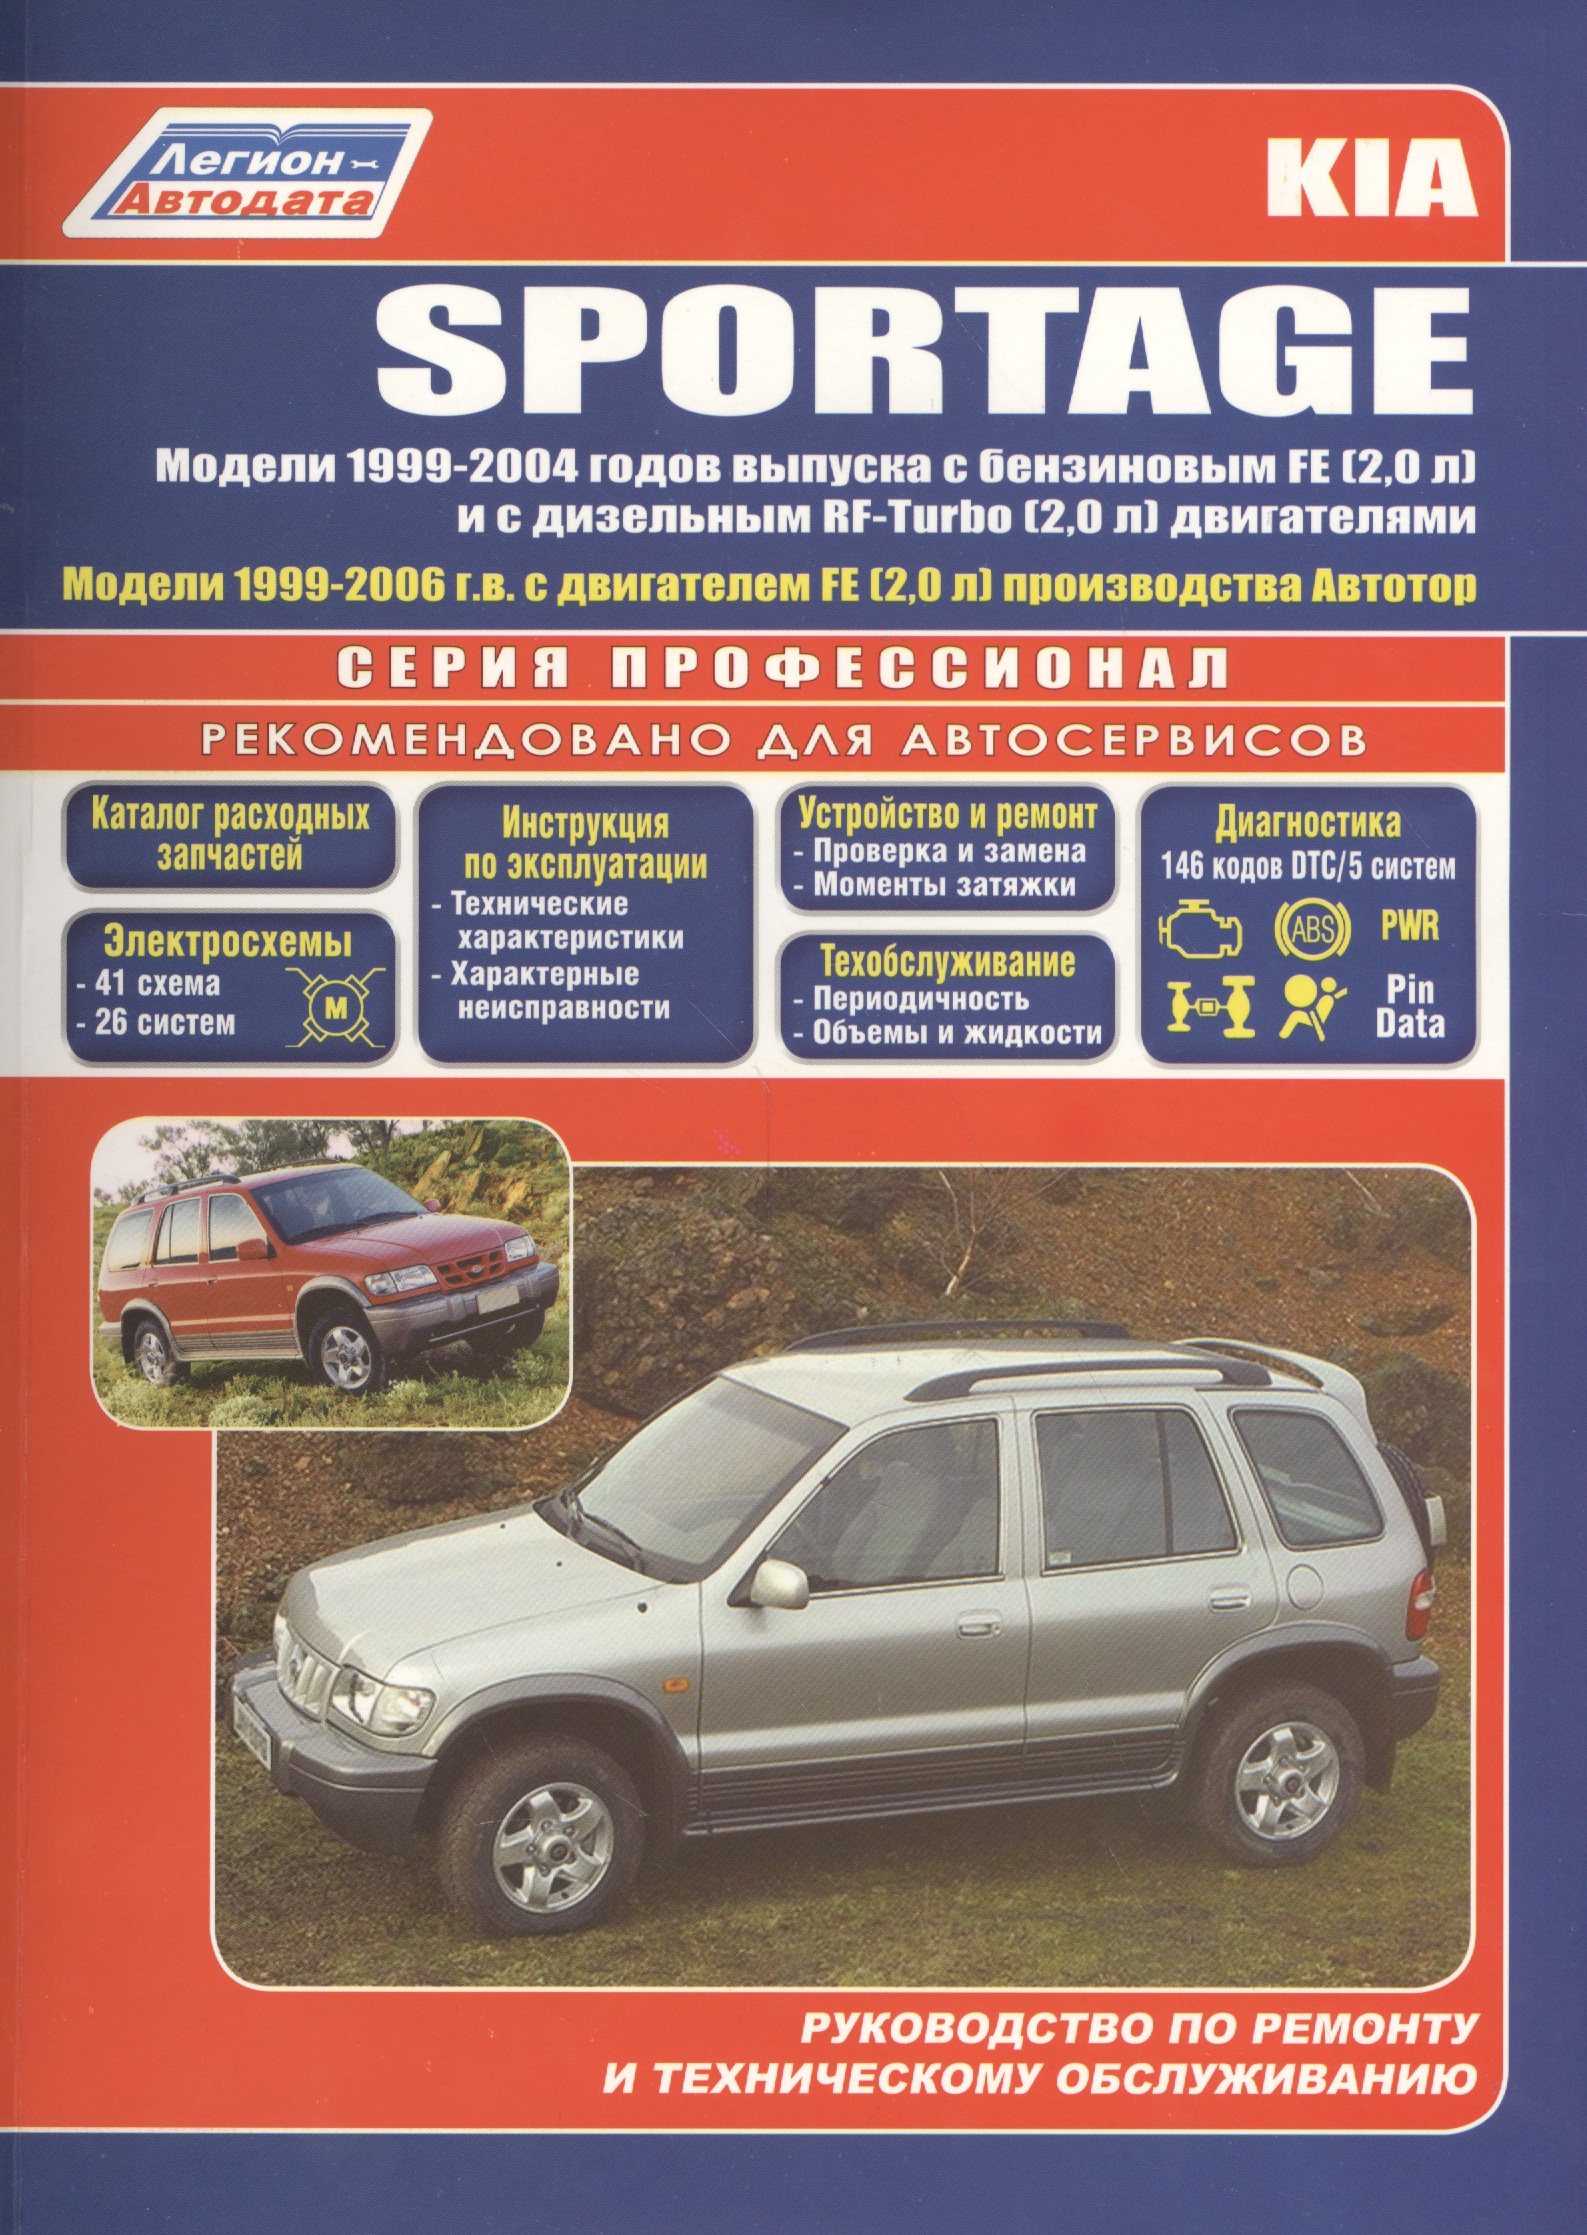 Kia Sportage Модели 2WD&4WD 1999-2004 г вып. с бенз. FE (2,0)…(мПрофессионал) kia sportage модели 1994 2000 гг выпуска с бензиновыми и дизельным двигателями черно белые схемы